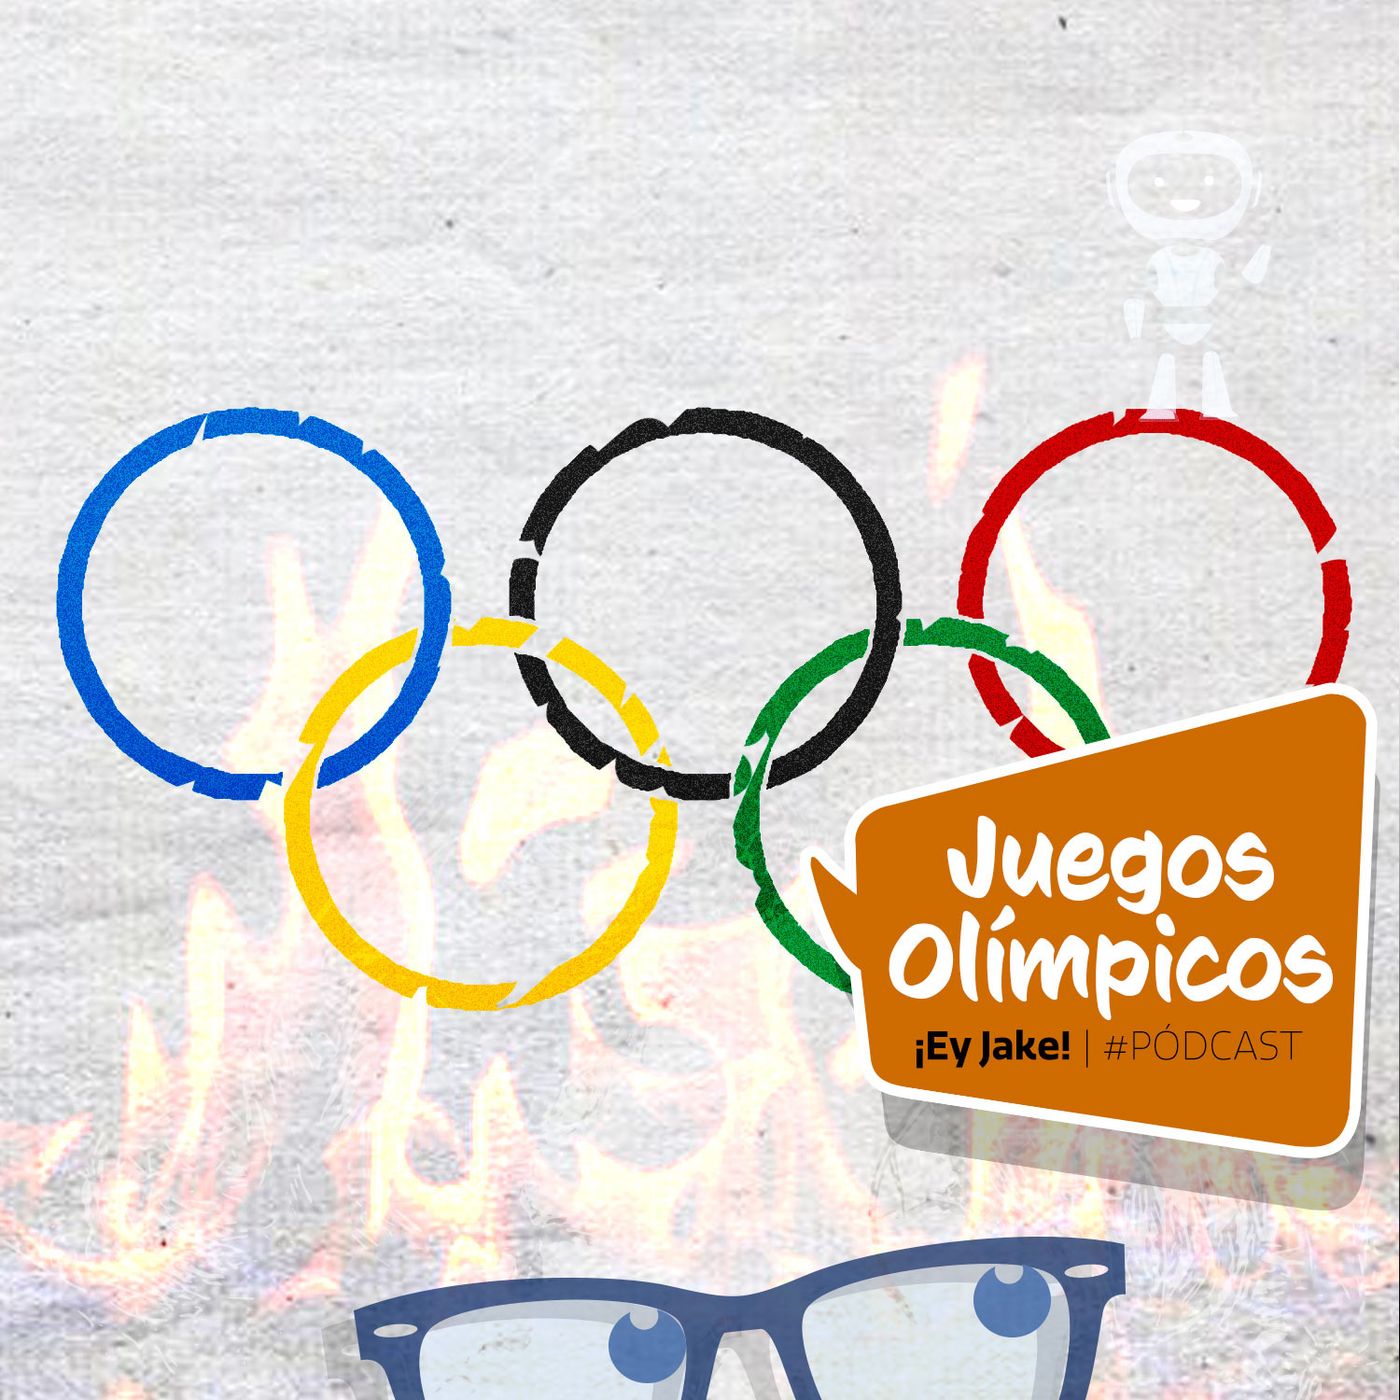 ¿Qué son los Juegos Olímpicos?